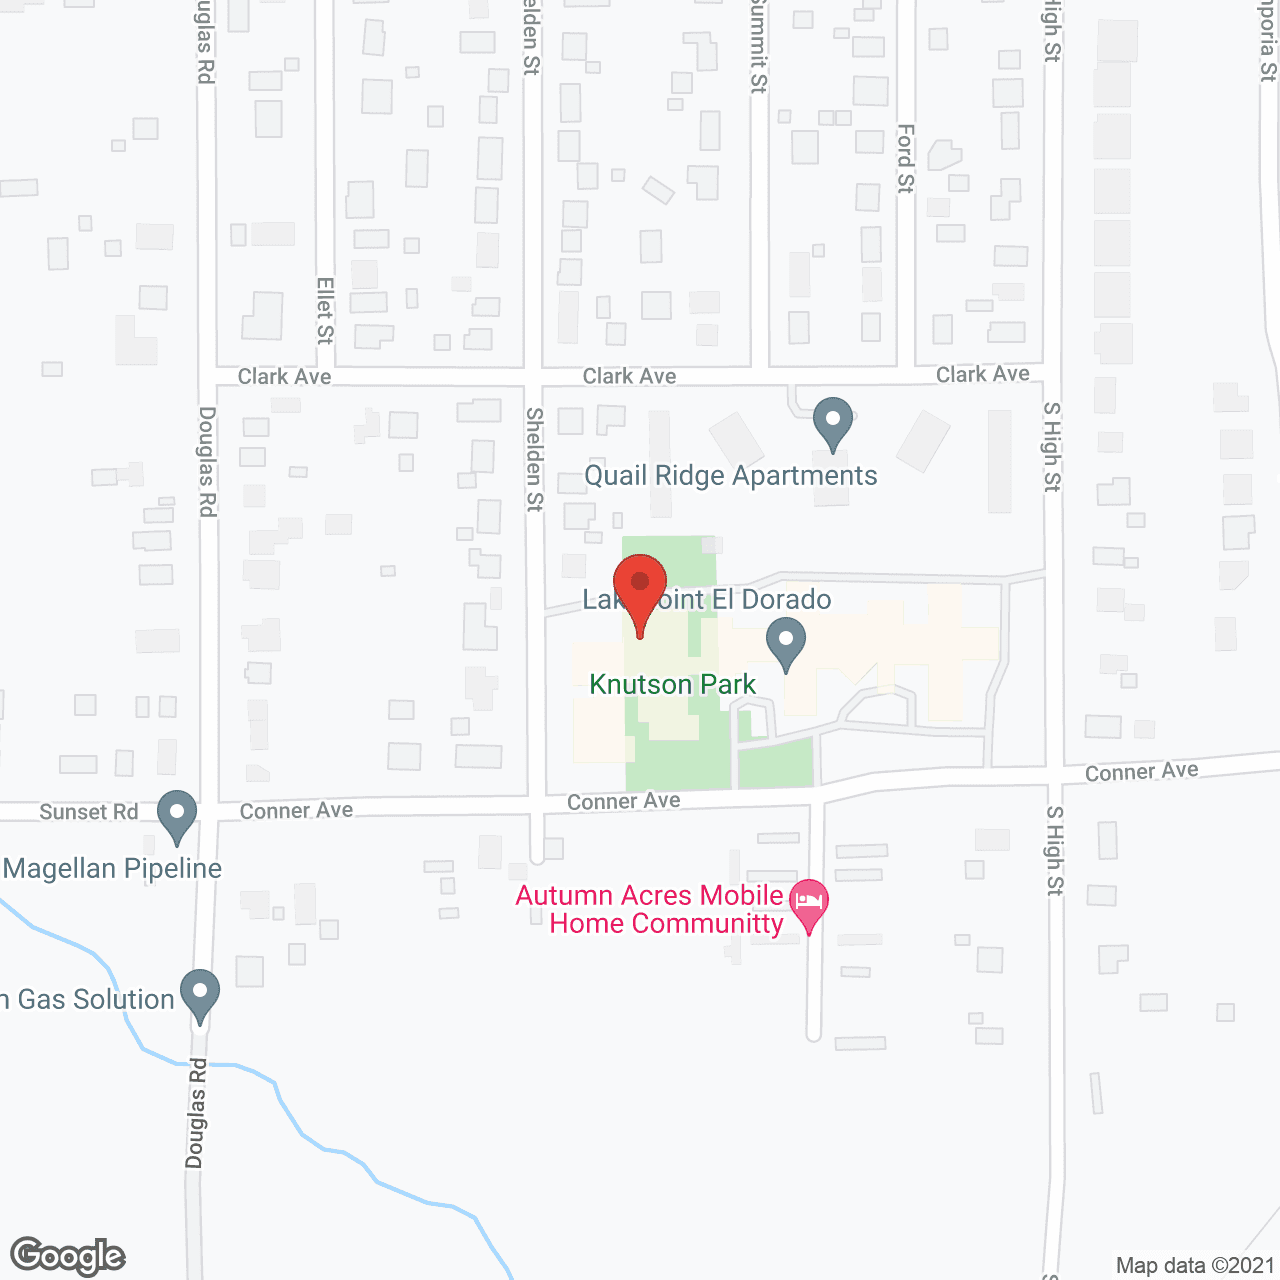 LakePoint El Dorado in google map